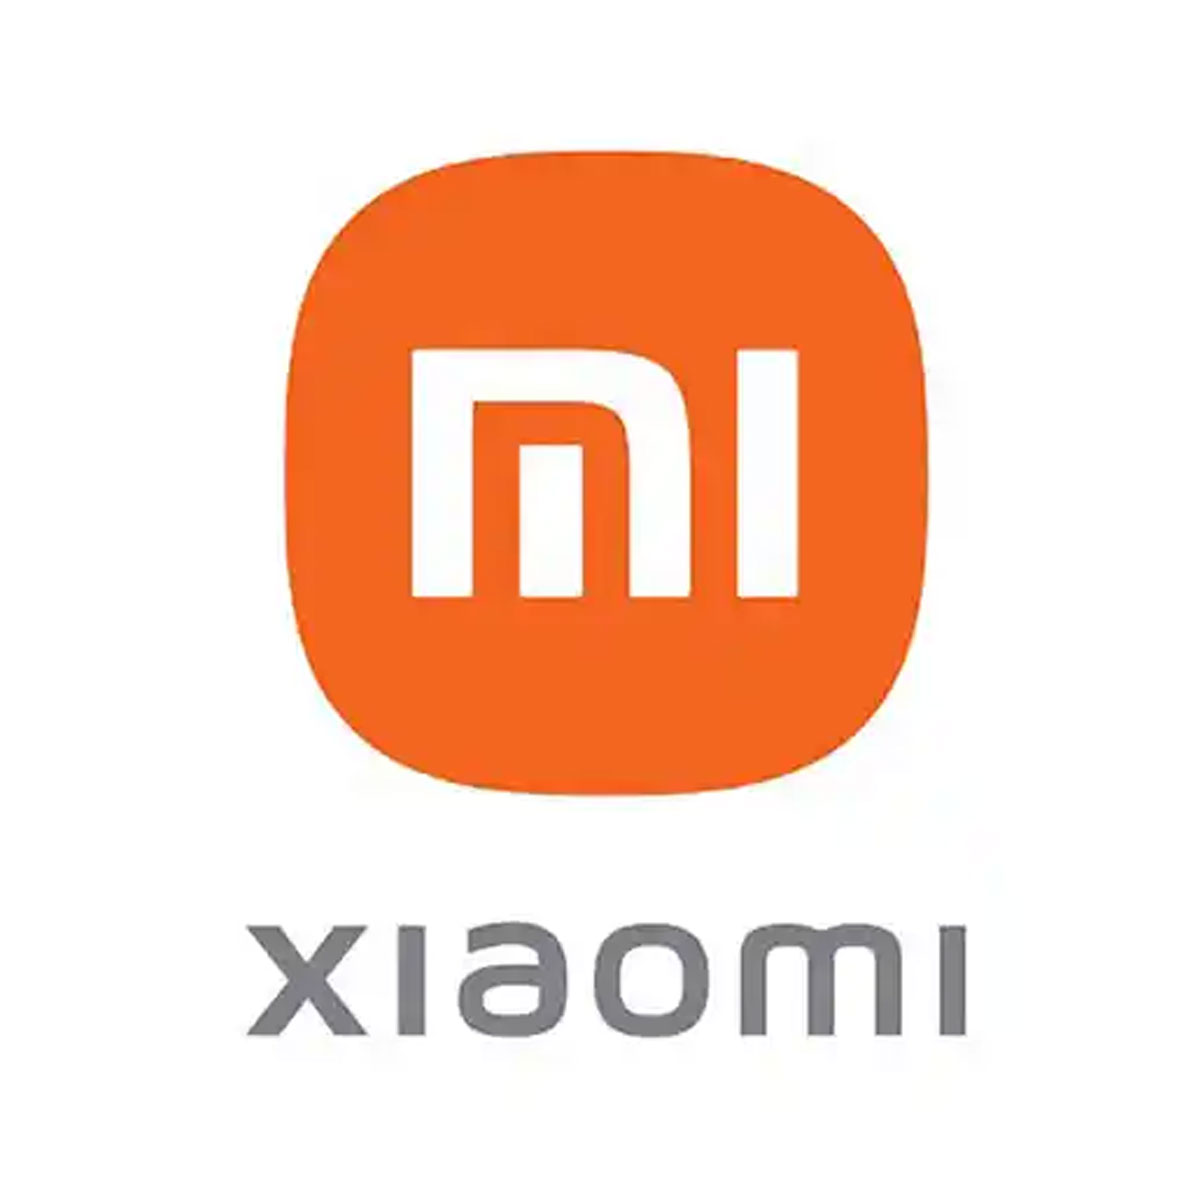 Xiaomi.png                                                                                                                                                                                                                                                    